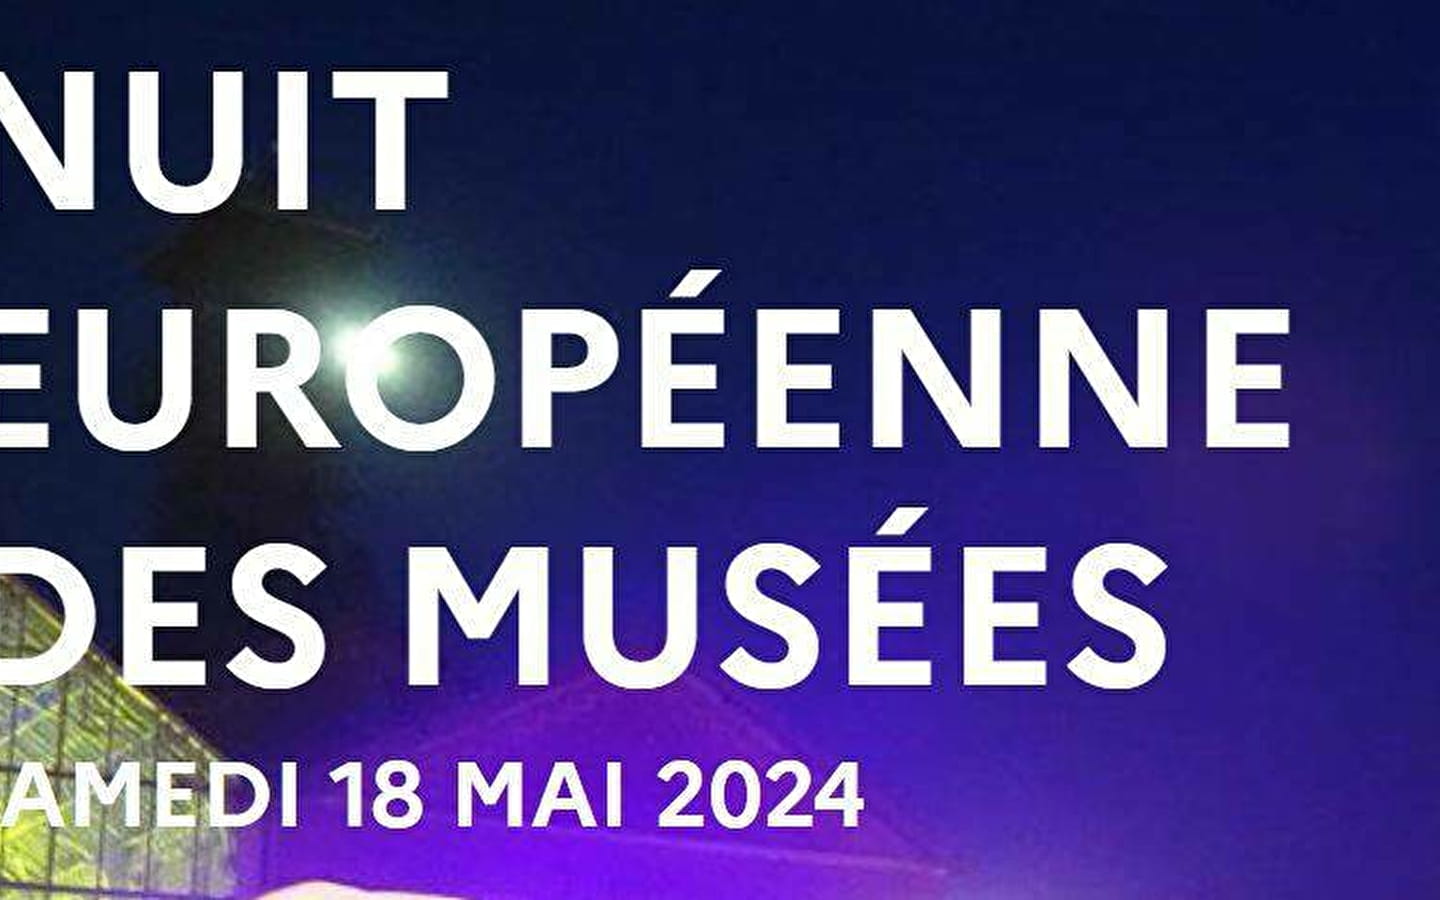 Nuit Européenne des Musées - Musée de la Lunette